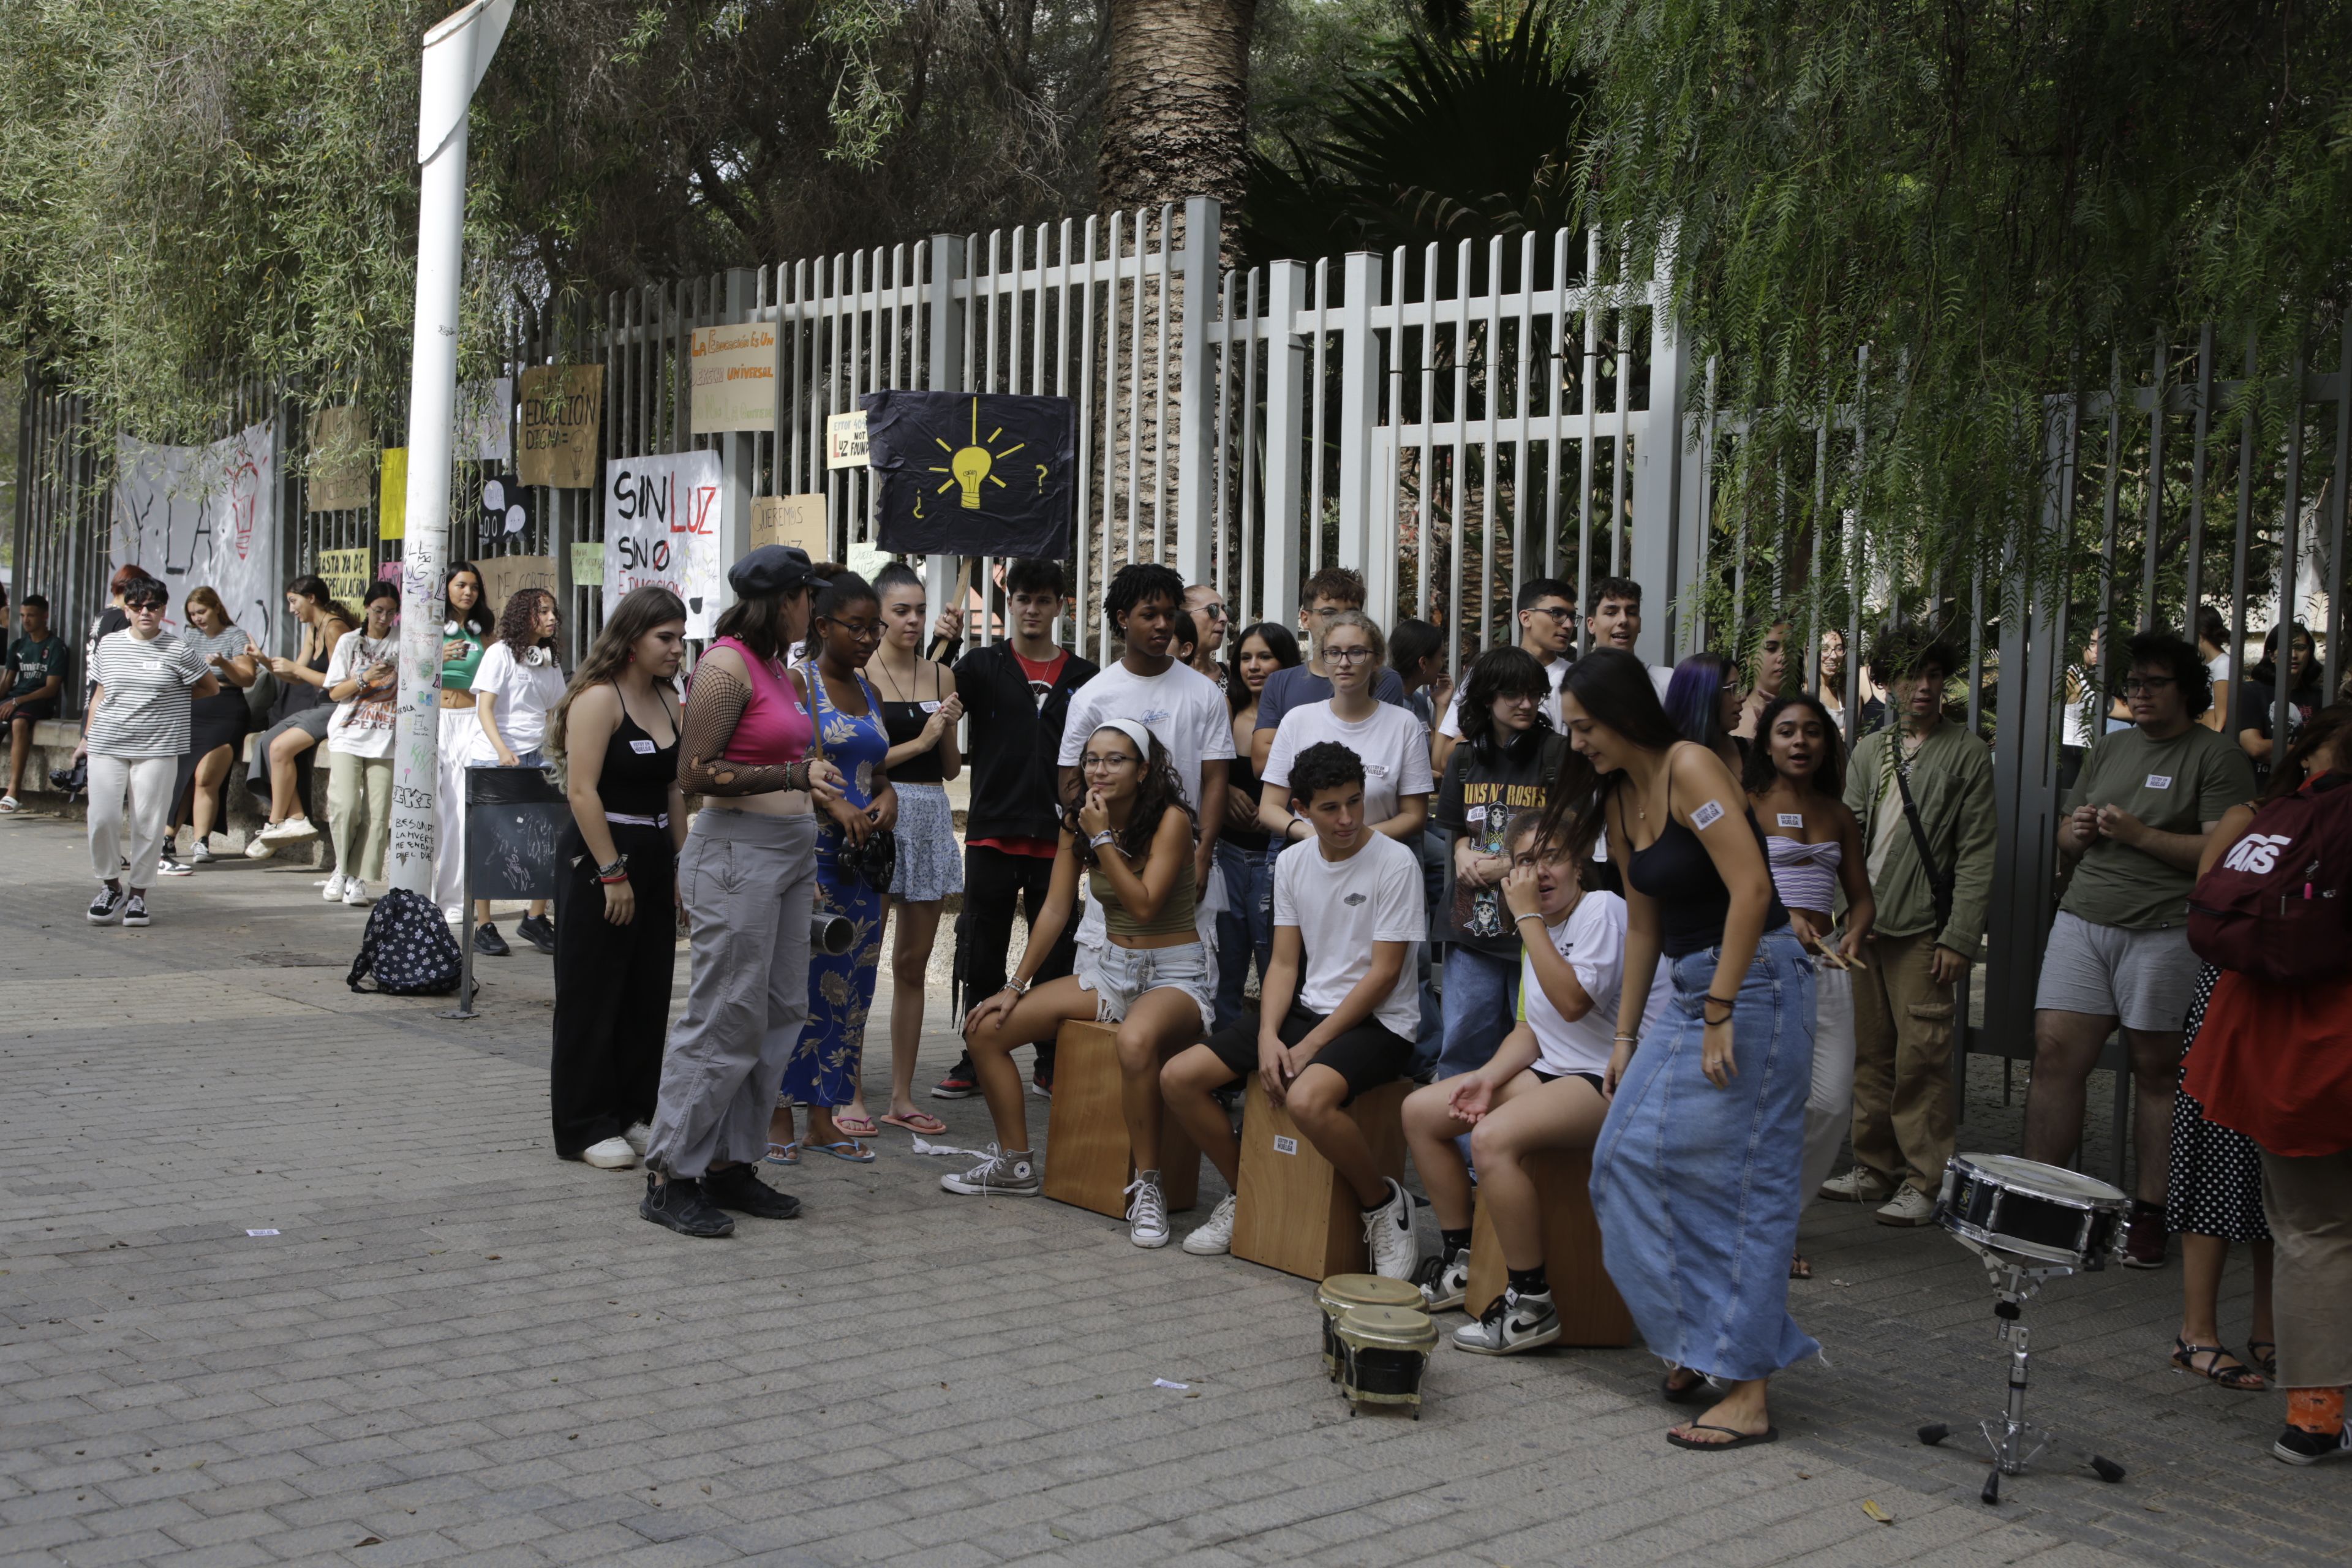 Huelga de los estudiantes de la Escuela de Arte Pancho Lasso (Foto: José Luis Carrasco)